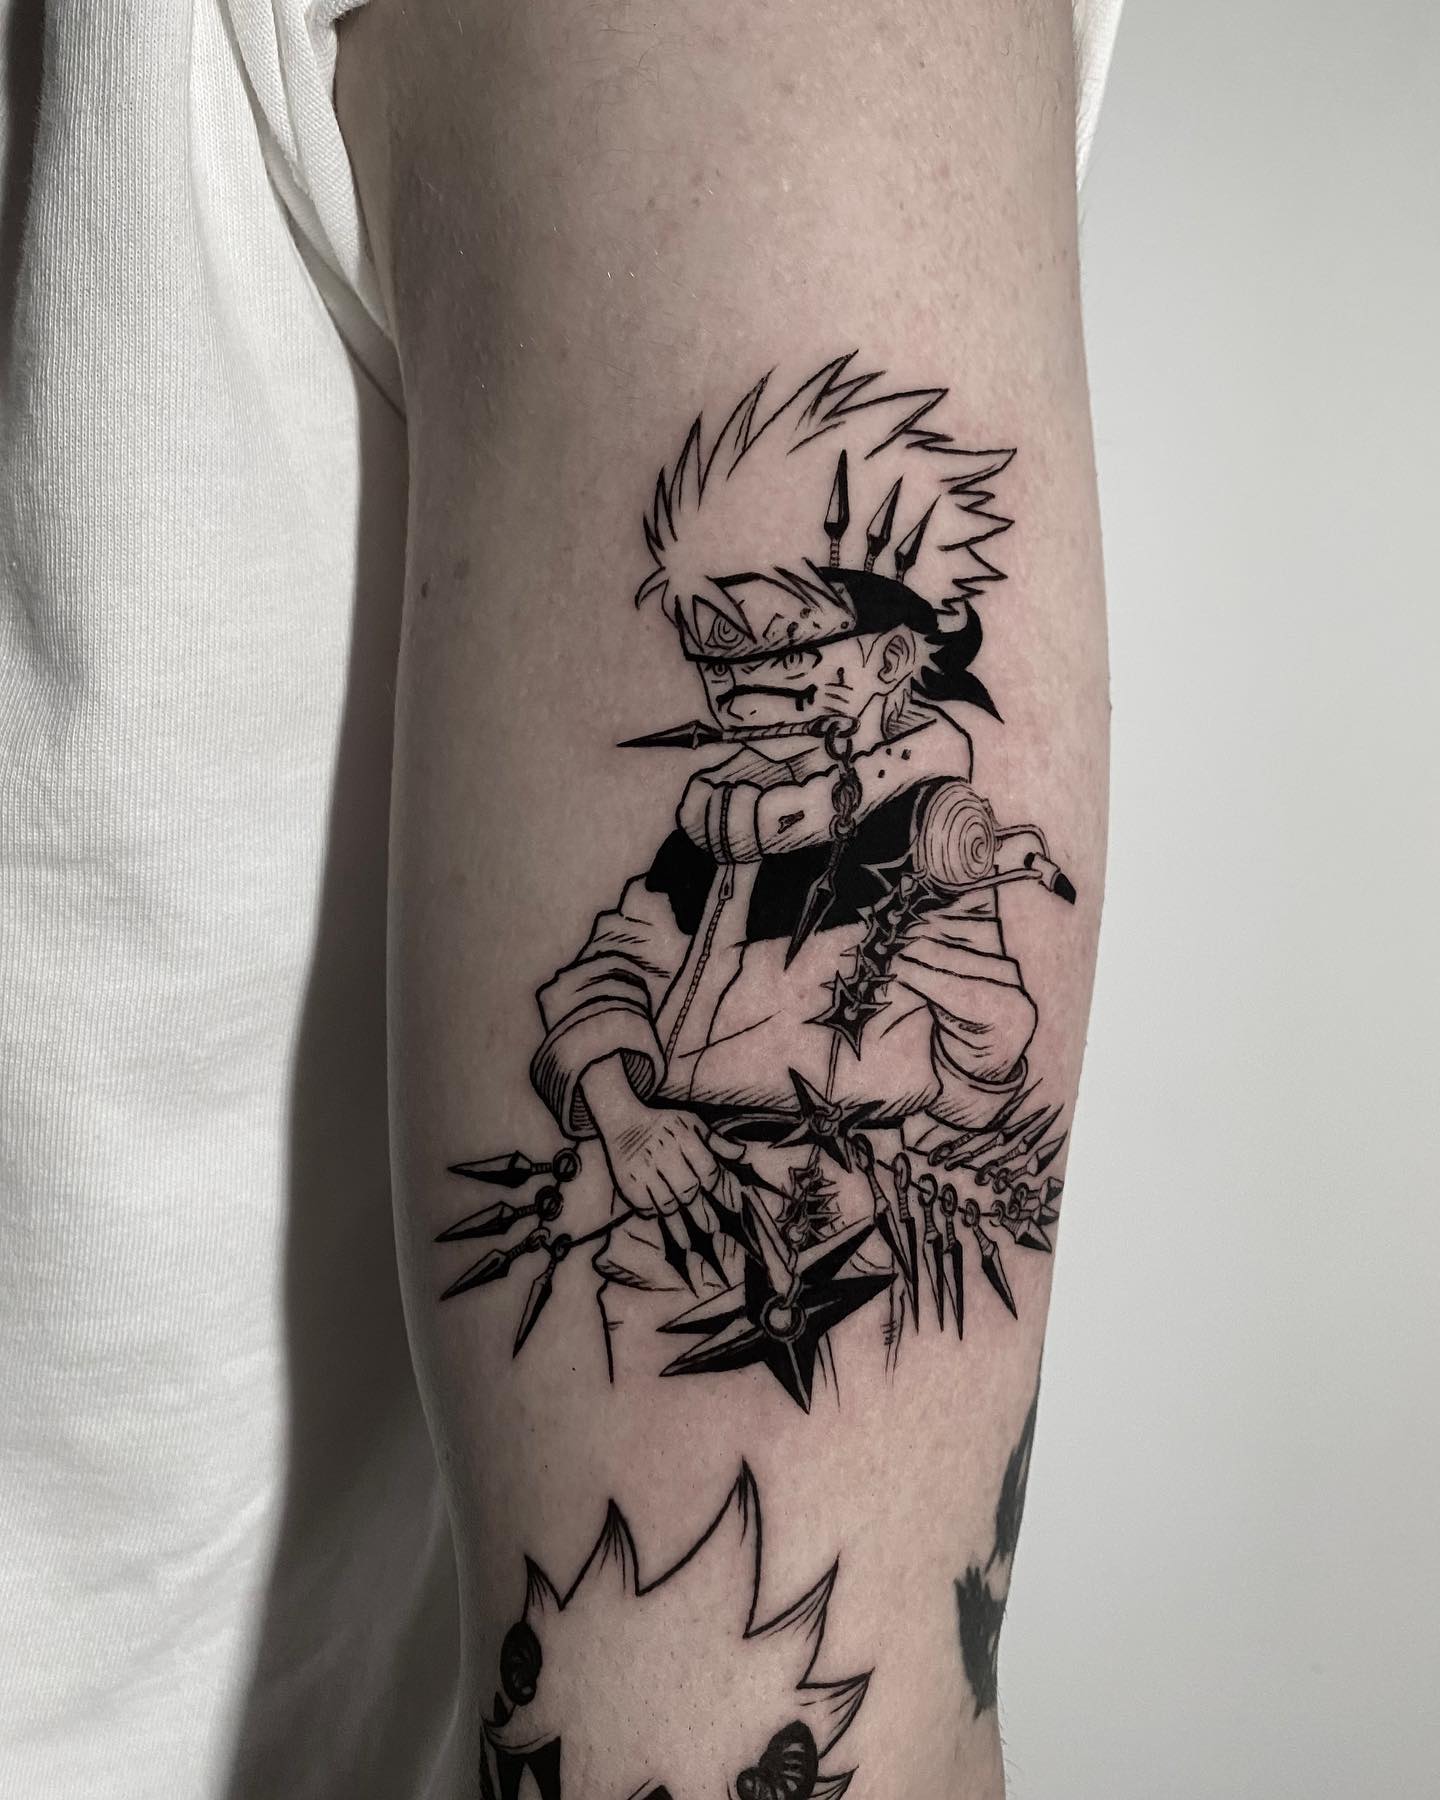 Naruto Uzumaki Tattoo on Arm